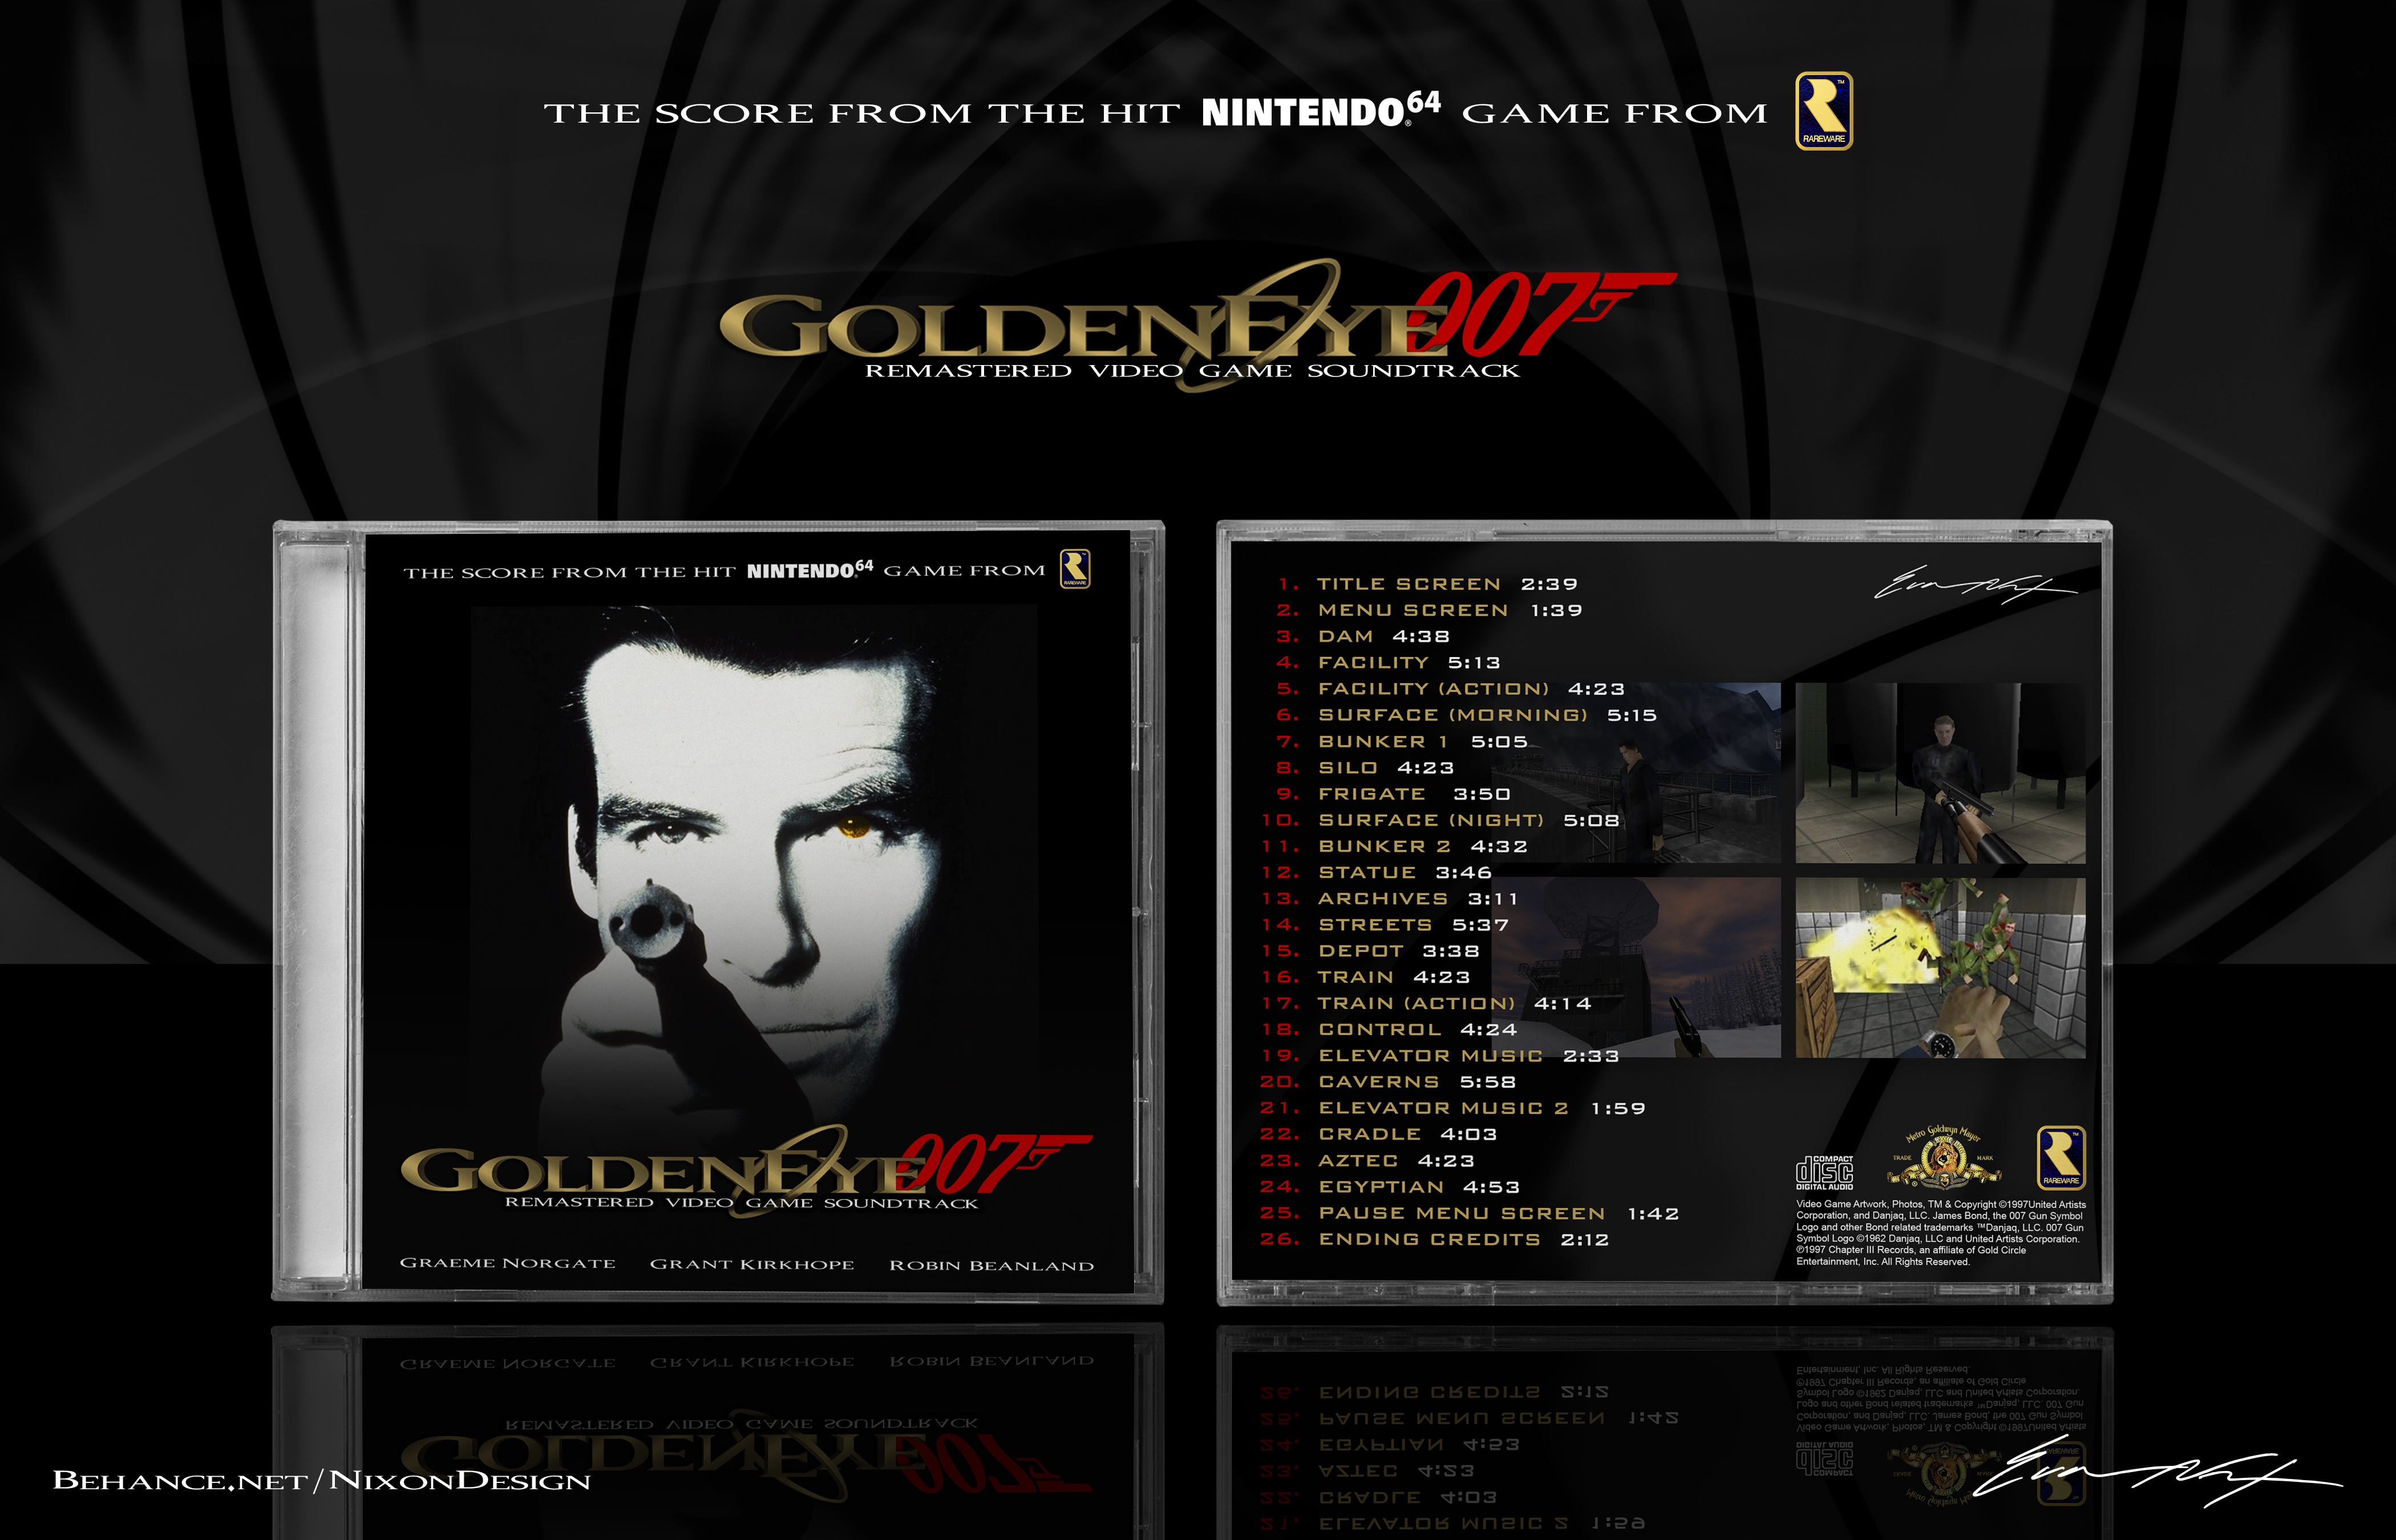 goldeneye 007 remastered